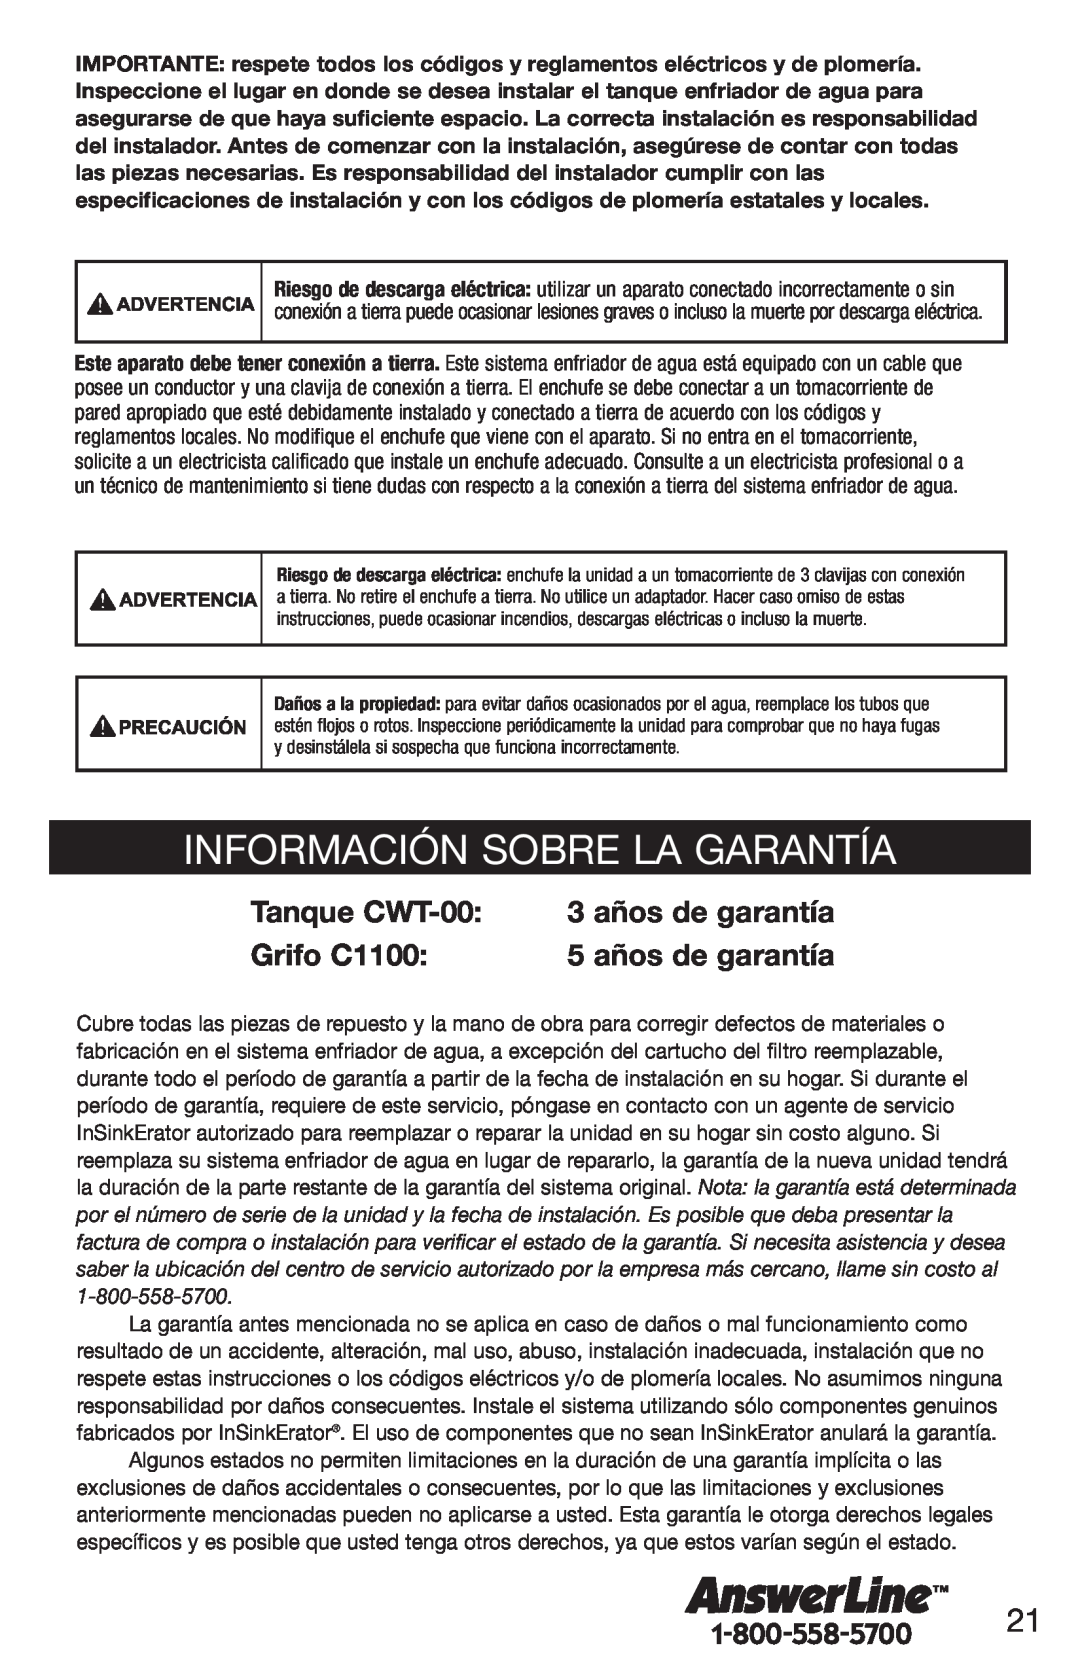 InSinkErator F-C1100 Información Sobre La Garantía, Tanque CWT-00, 3 años de garantía, Grifo C1100, 5 años de garantía 